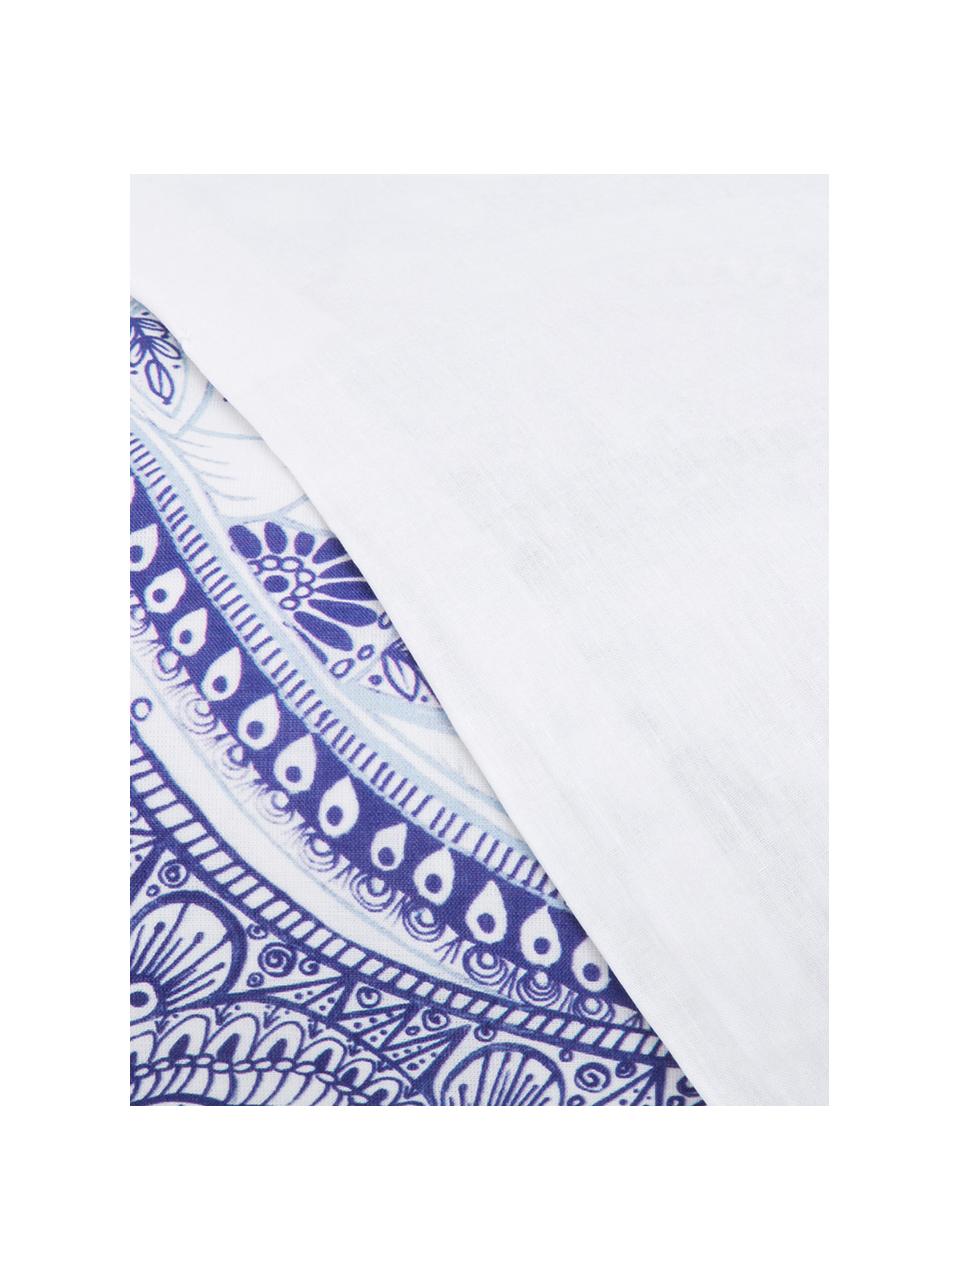 Parure copripiumino in cotone Lato, Cotone, Fronte: tonalità blu, bianco, retro: bianco, 200 x 200 cm